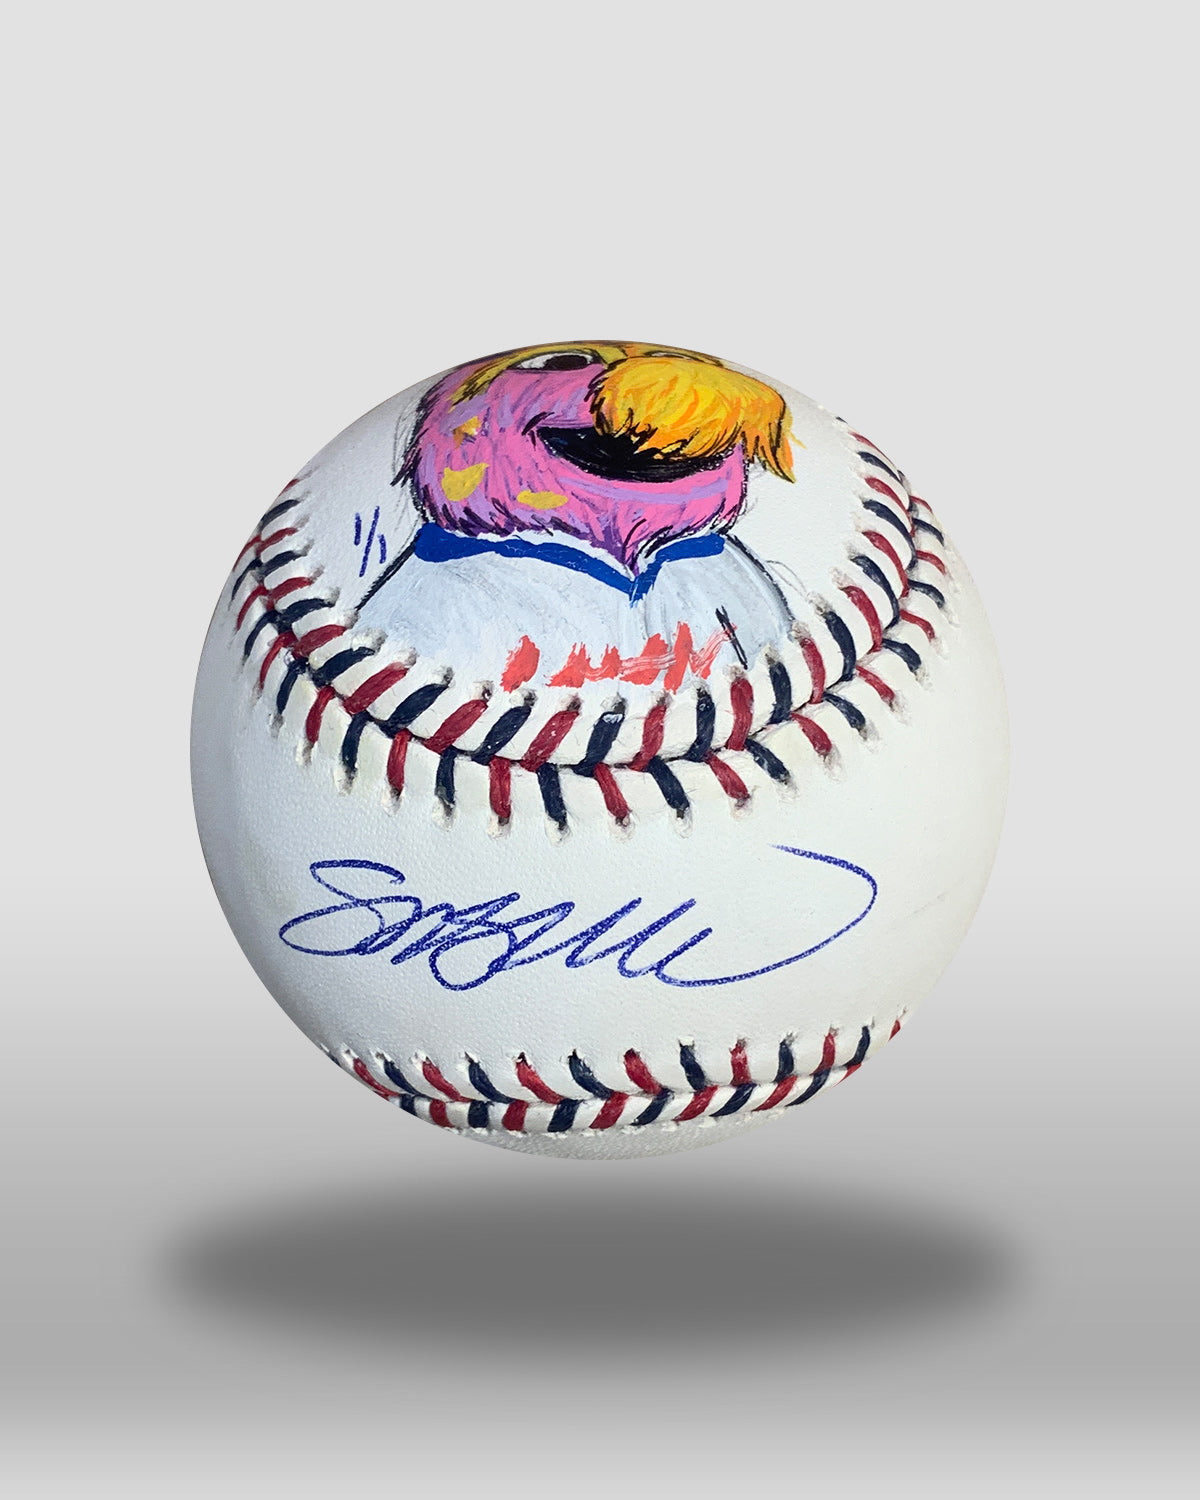 Slider Hand-Painted All-Star Game Baseball Art